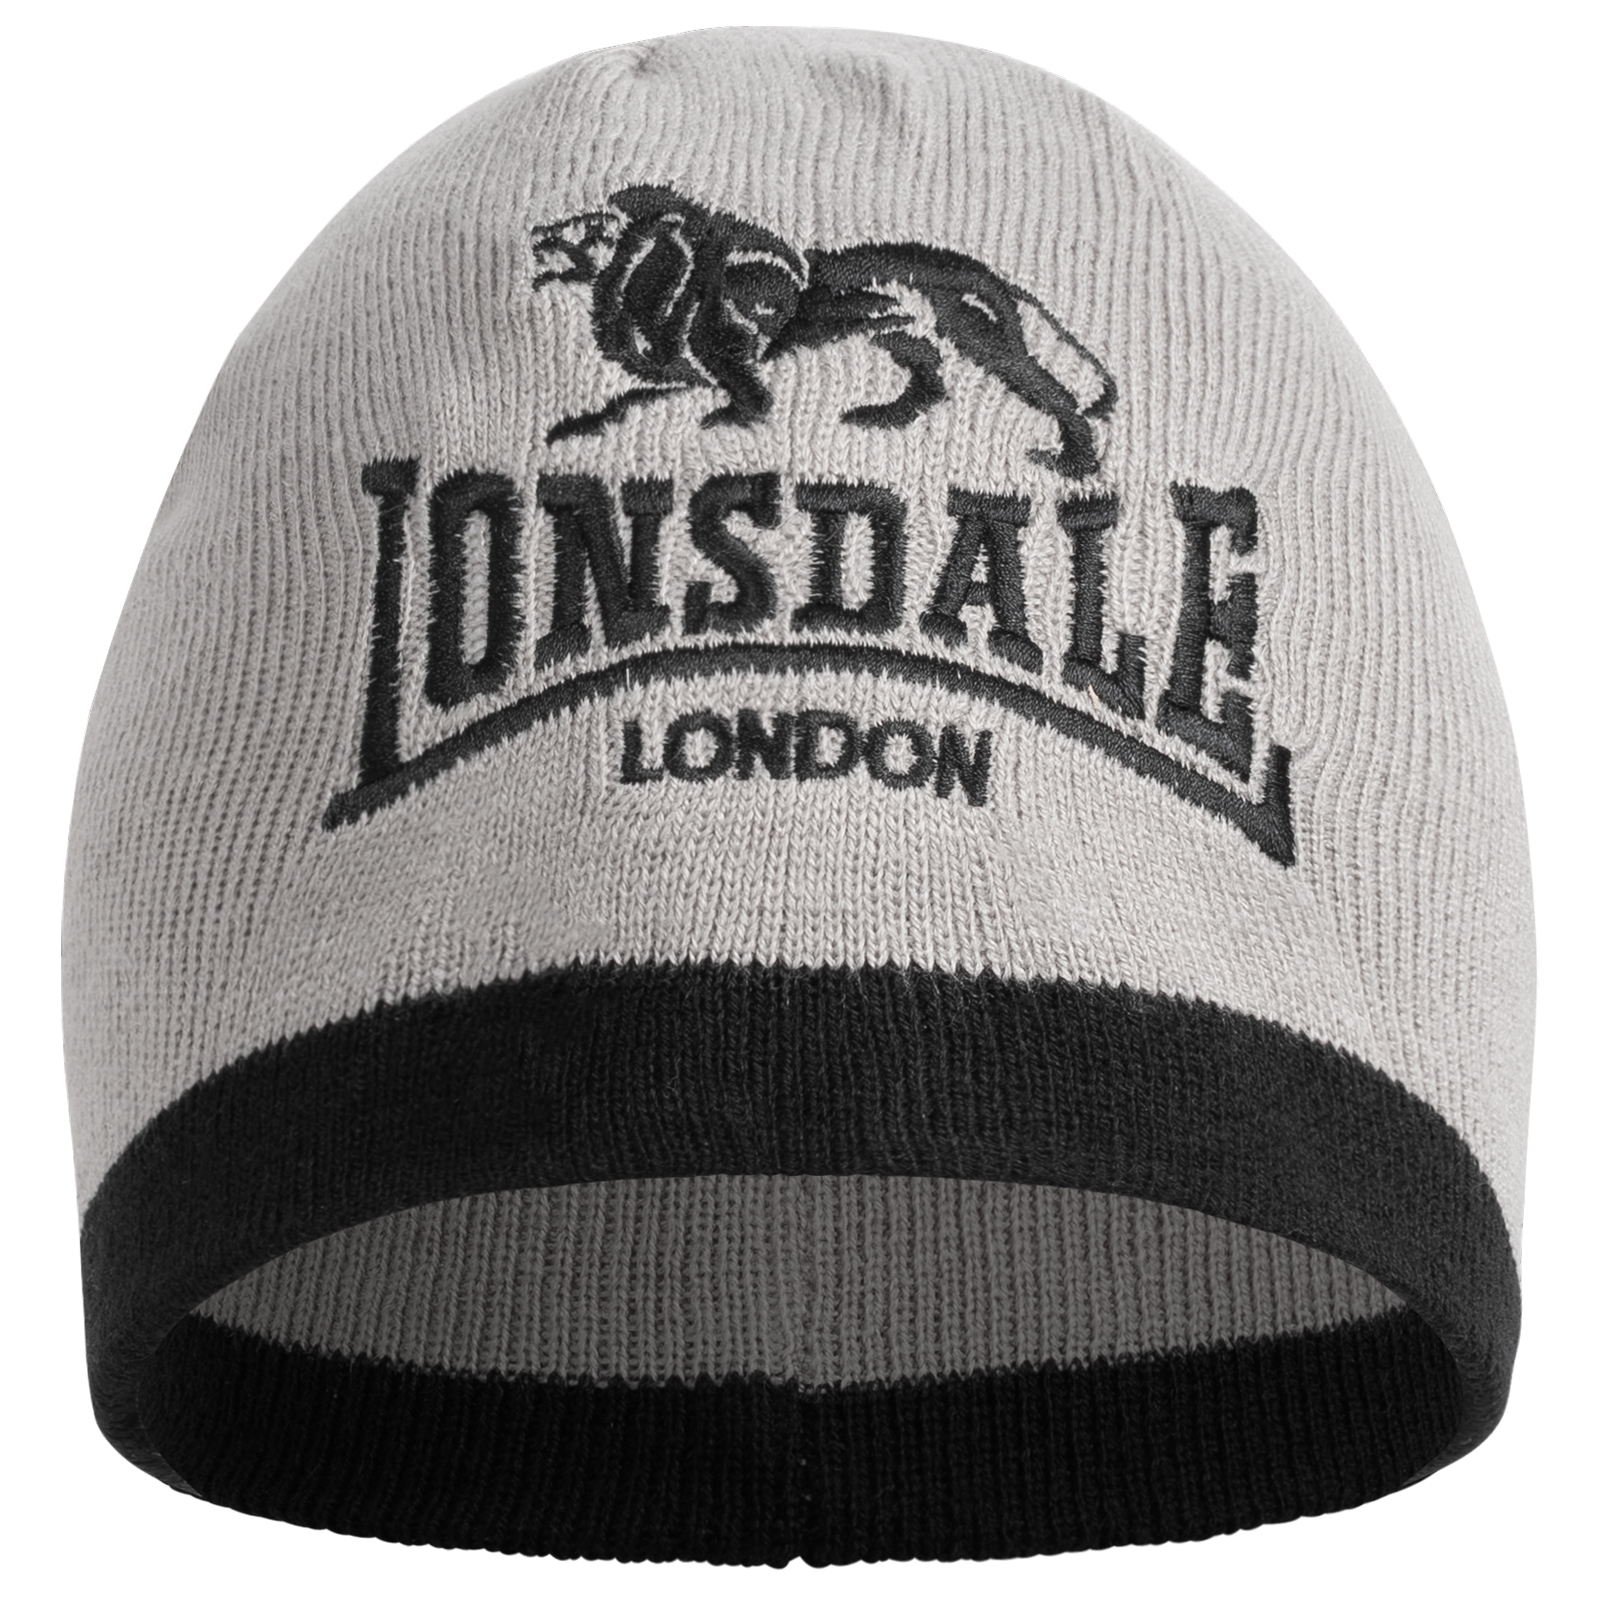 Σκούφος Lonsdale 117339-Grey/Black